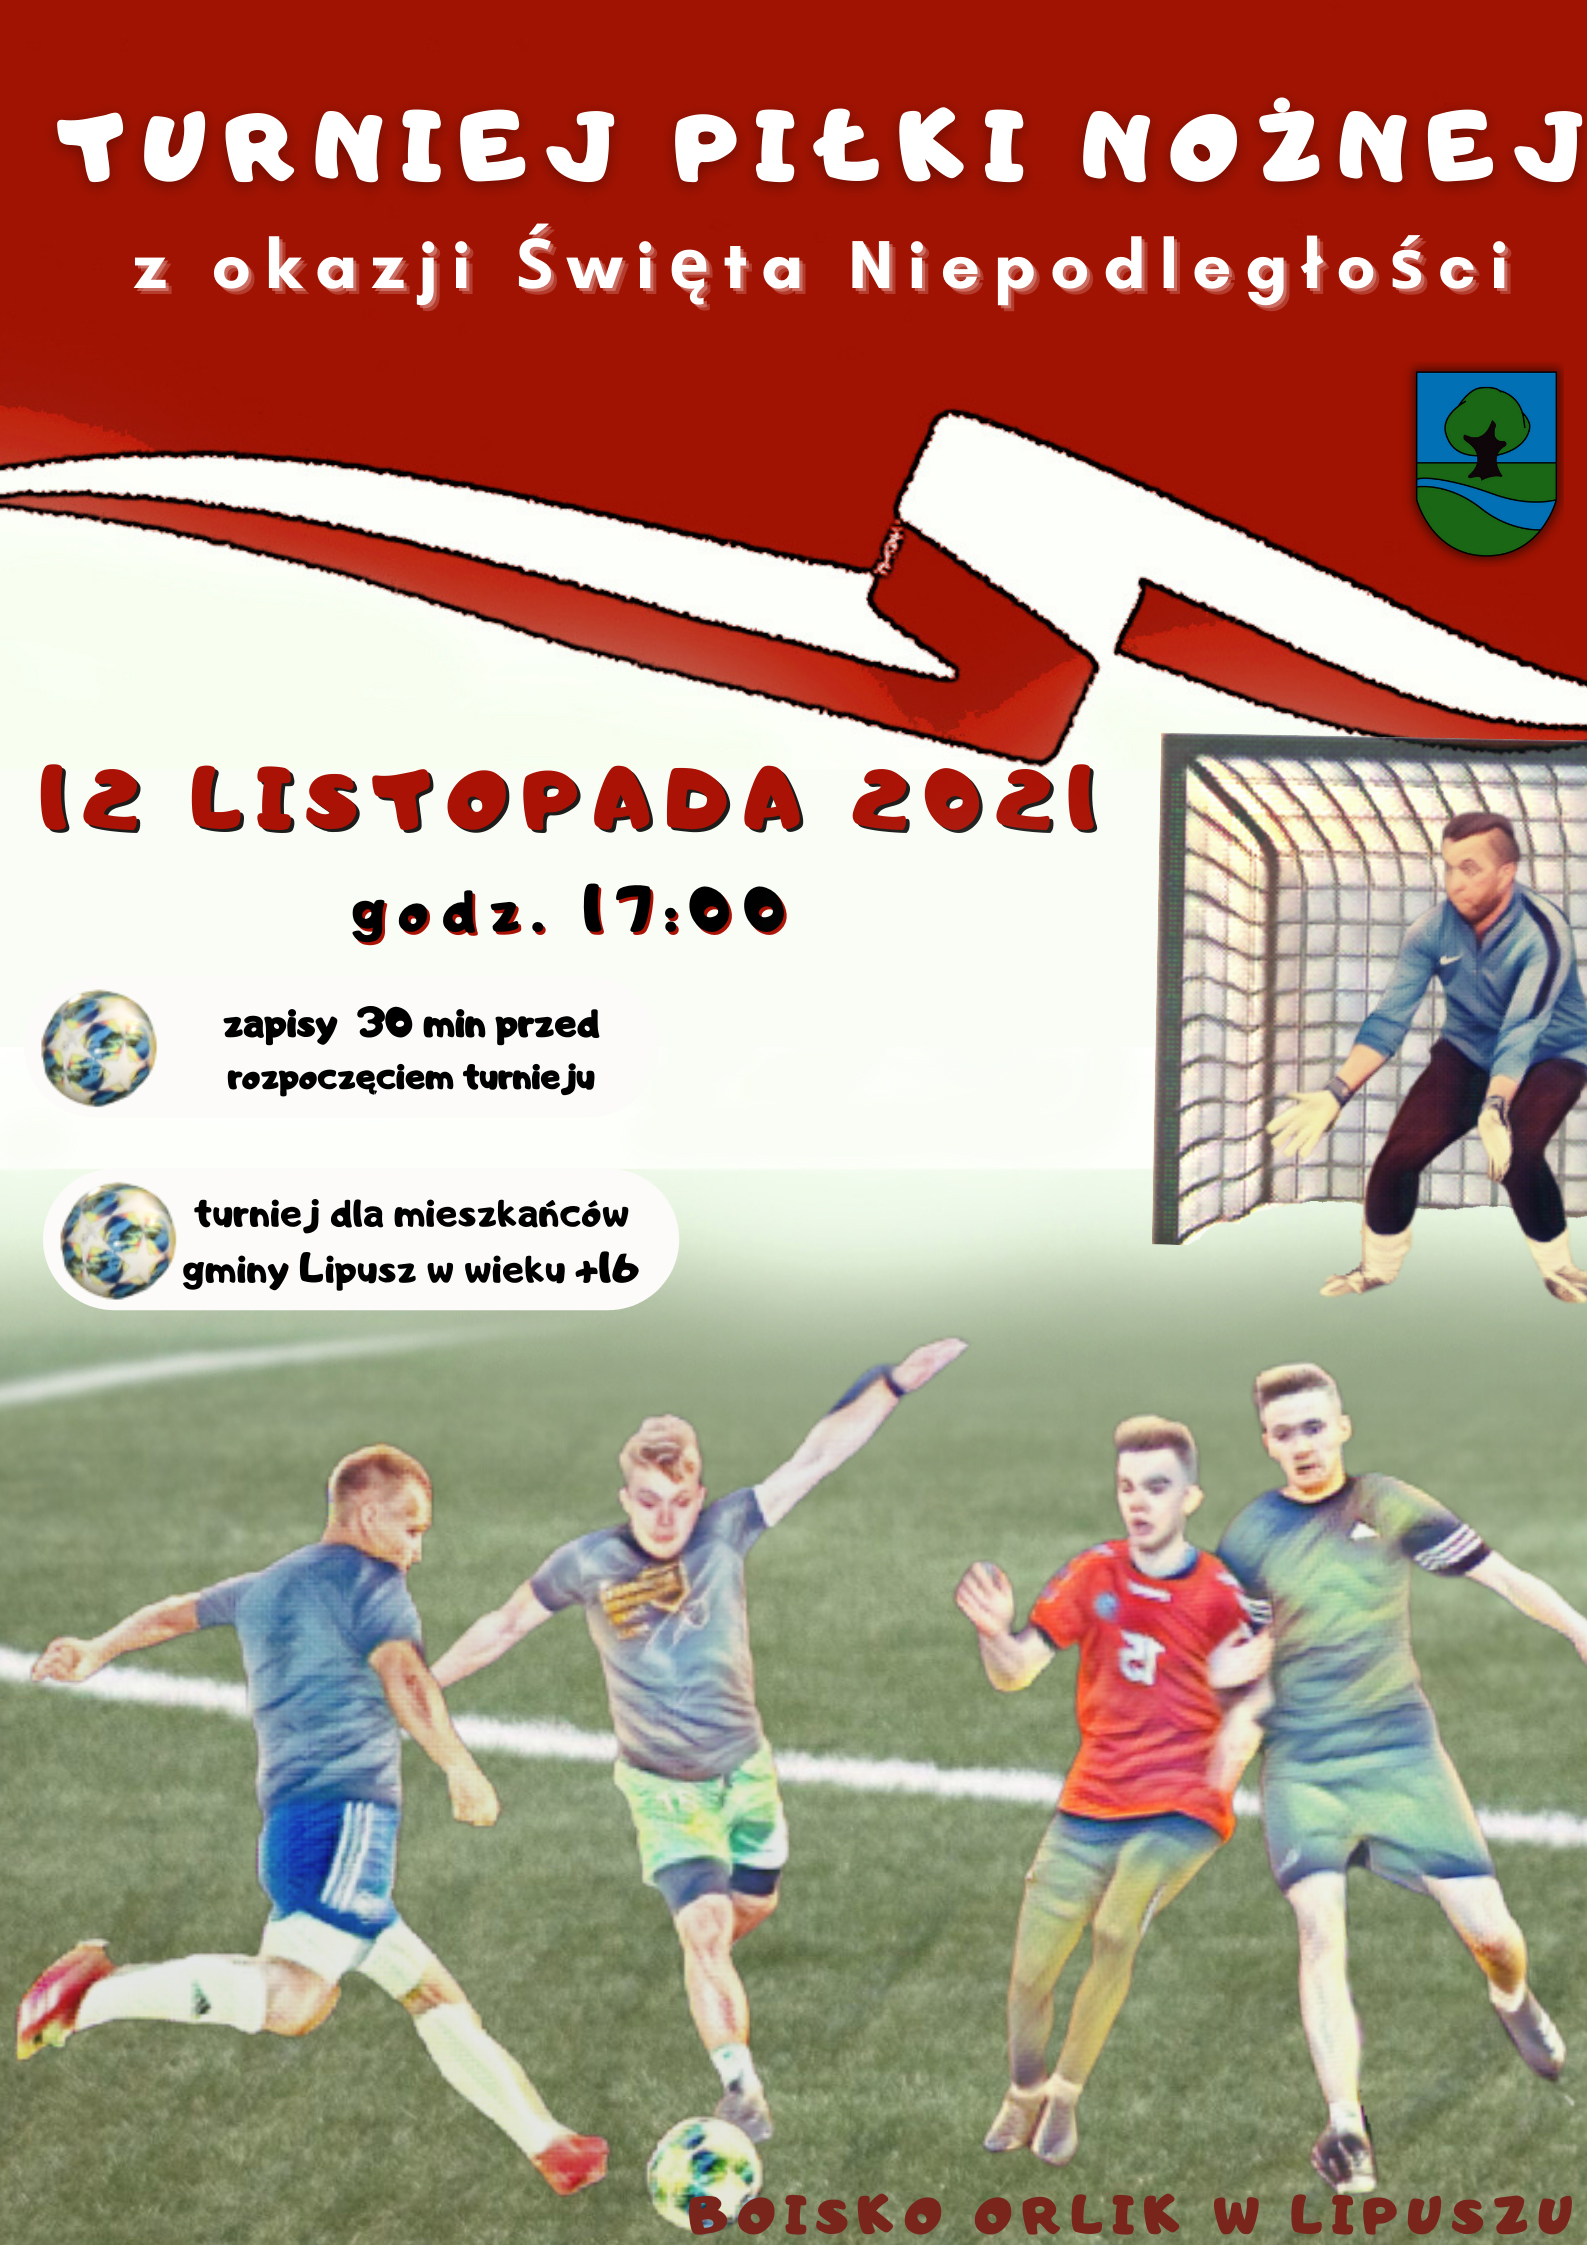 Turniej piłki nożnej z okazji Święta Niepodległości 12 listopada 2021 godz. 17:00